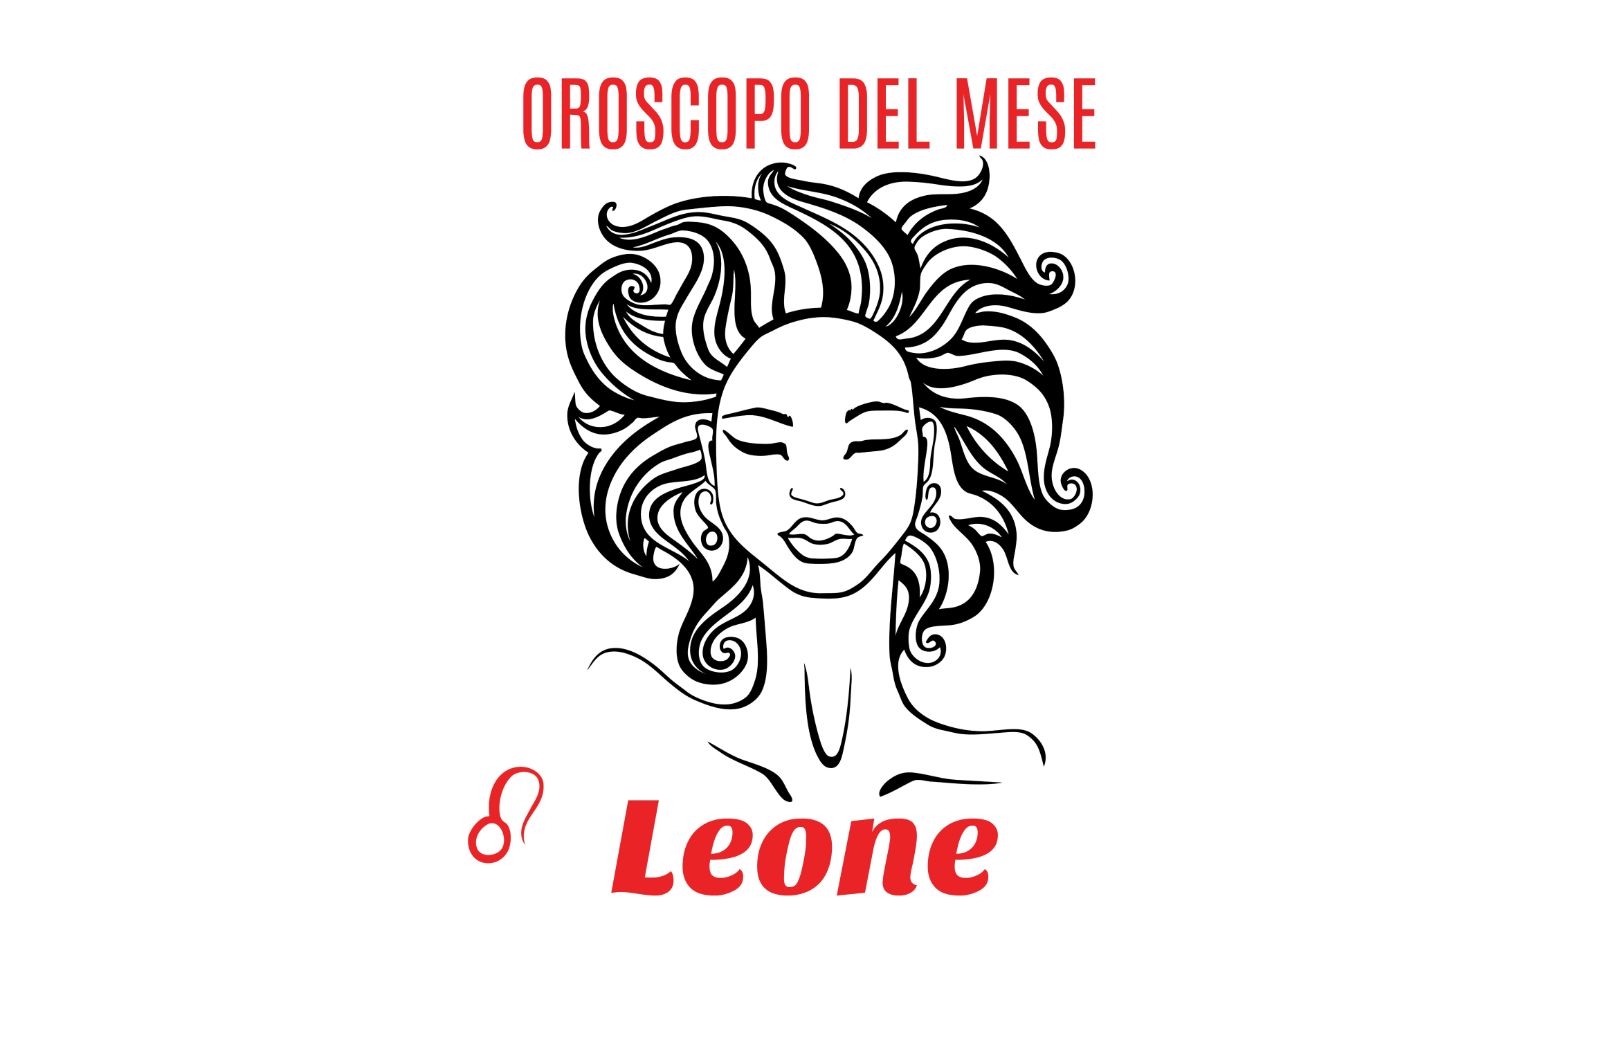 Oroscopo del mese: Leone - agosto 2019